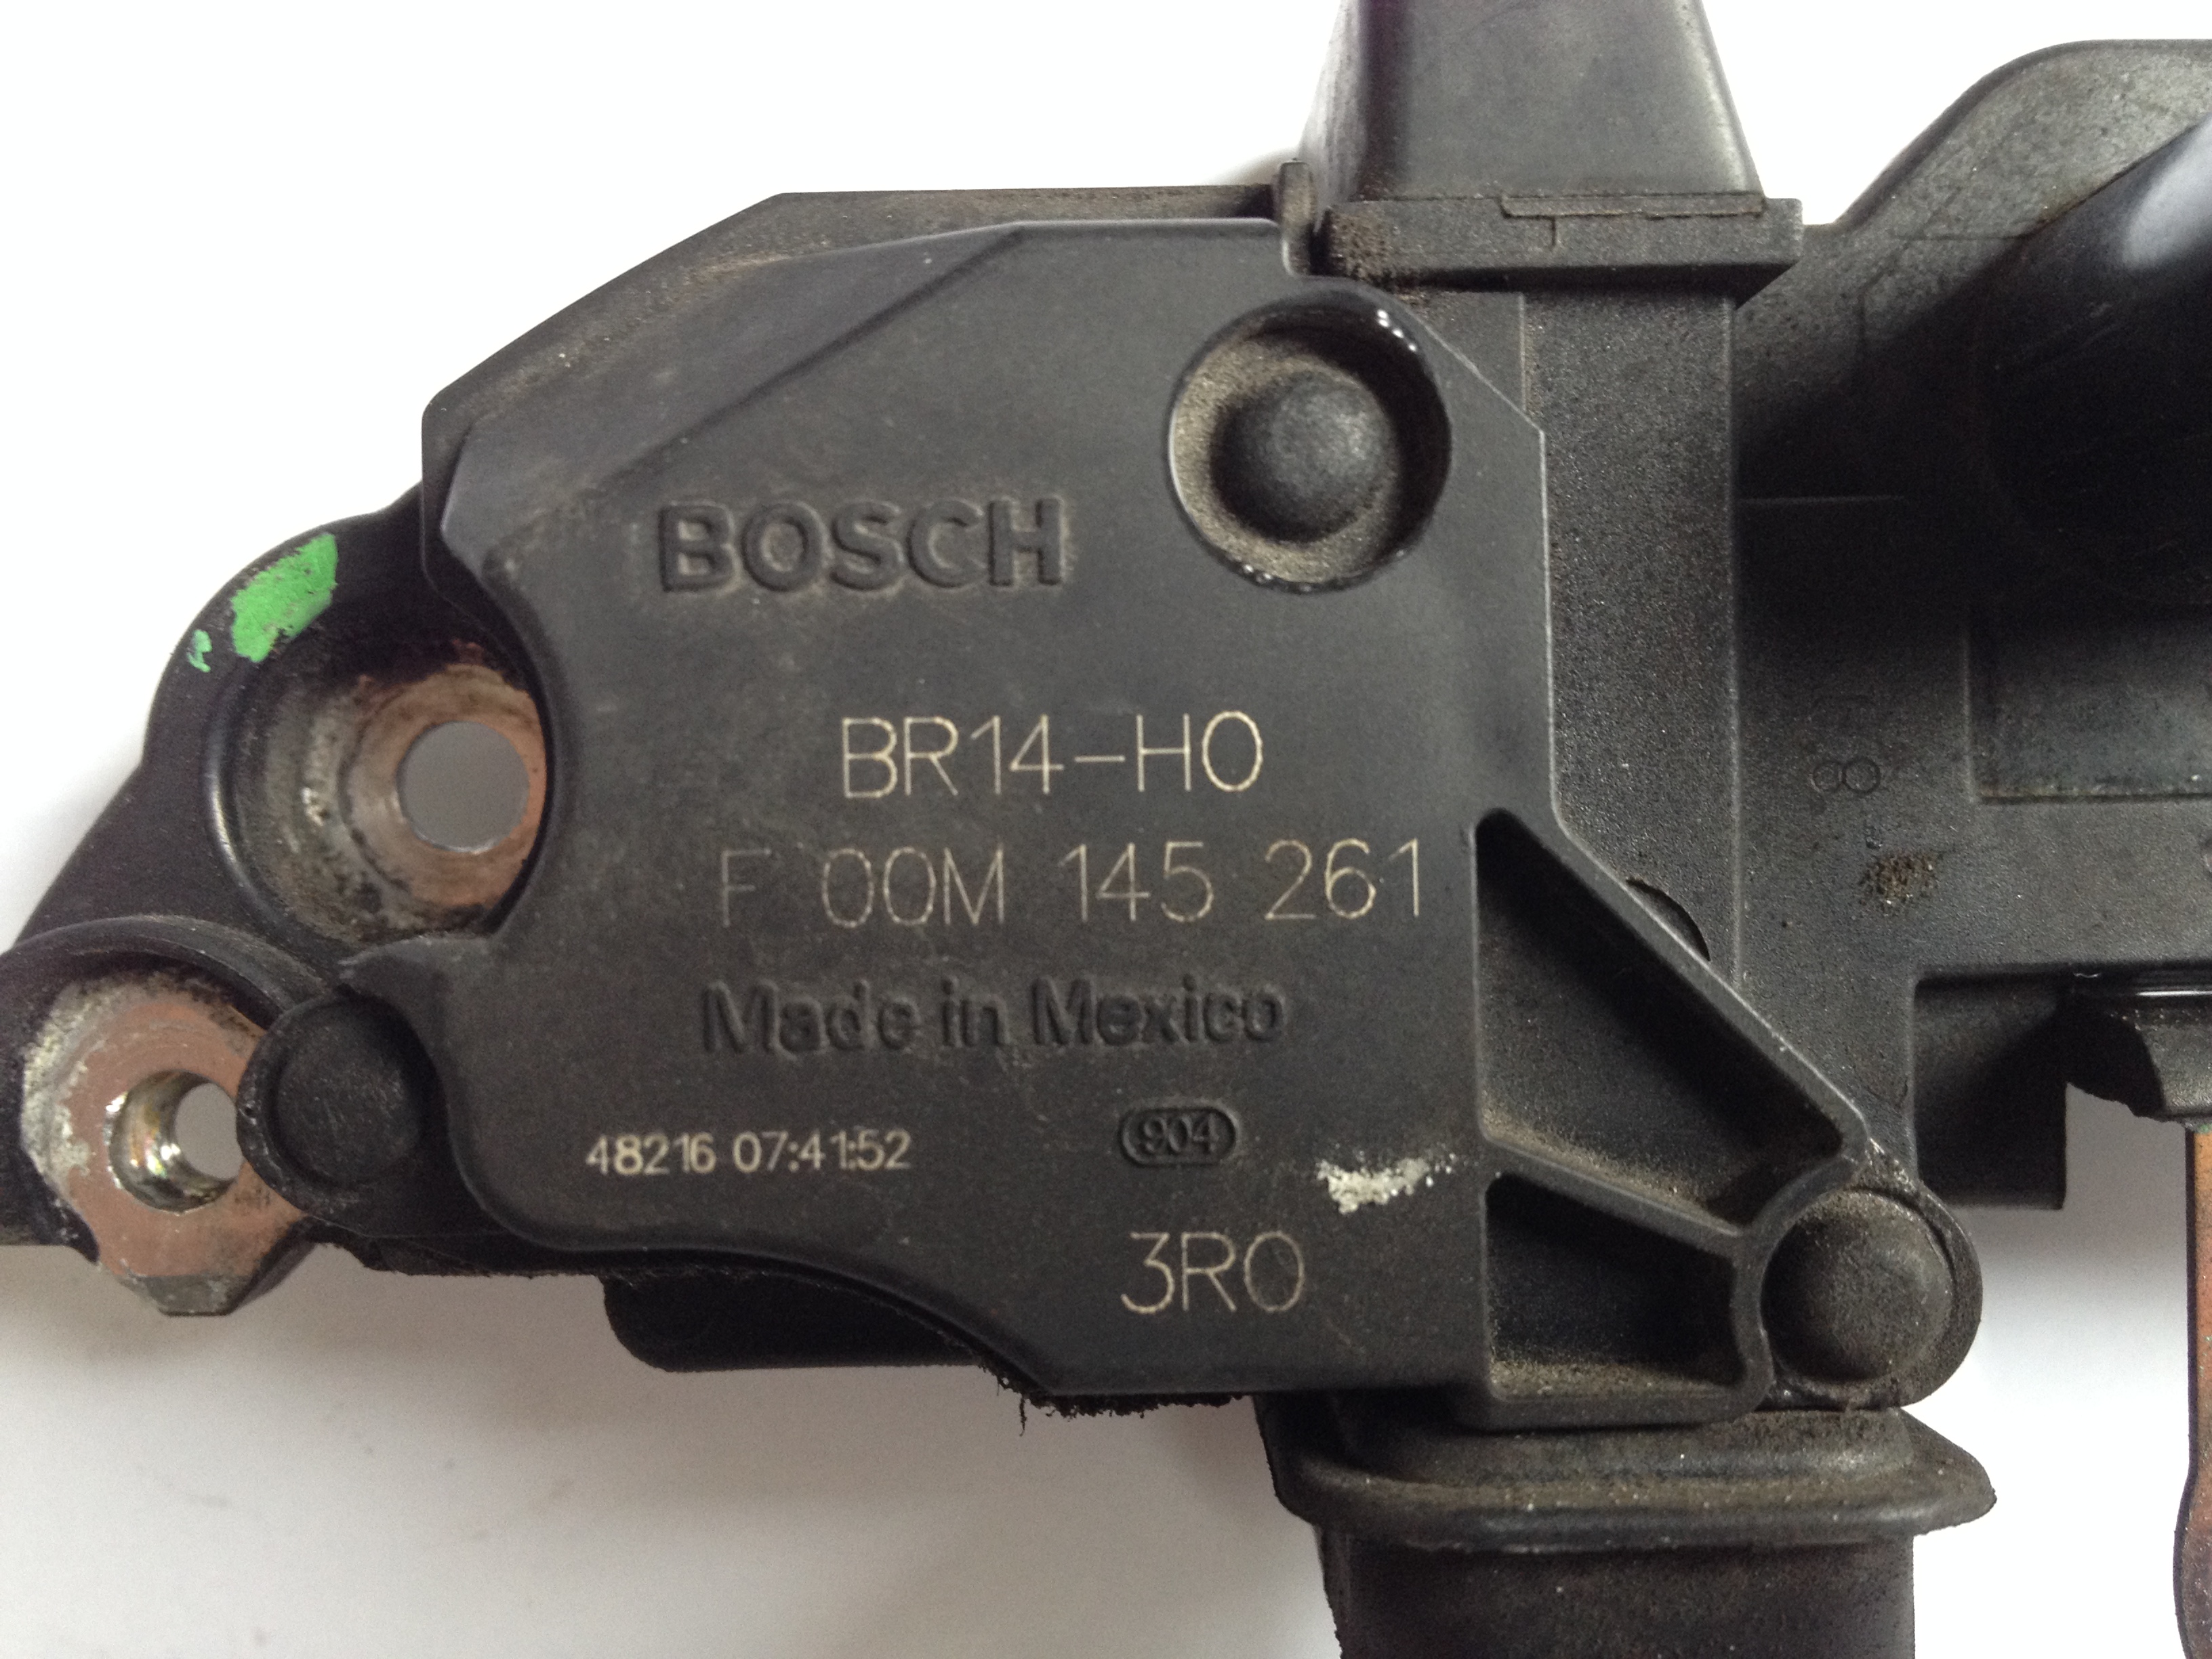 Lichtmaschinenregler F 00M A45 237 BOSCH — BR14-M1